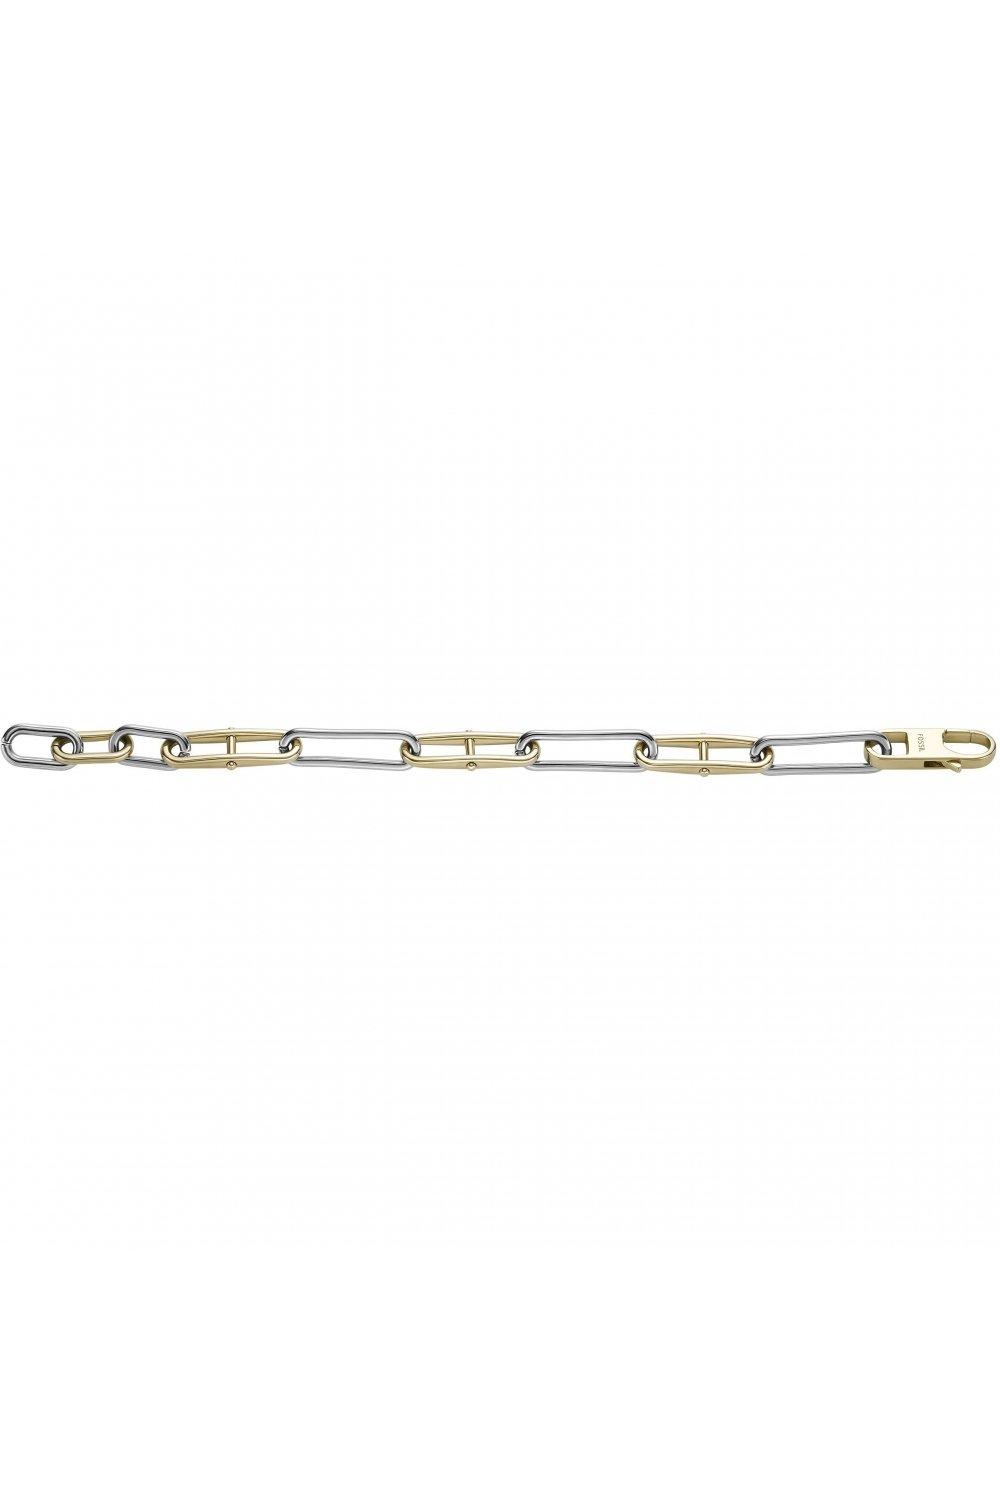 Le Bracelet Fossil femme, à chaîne Heritage D-Link en acier inoxydable,  bicolore, JF04349998